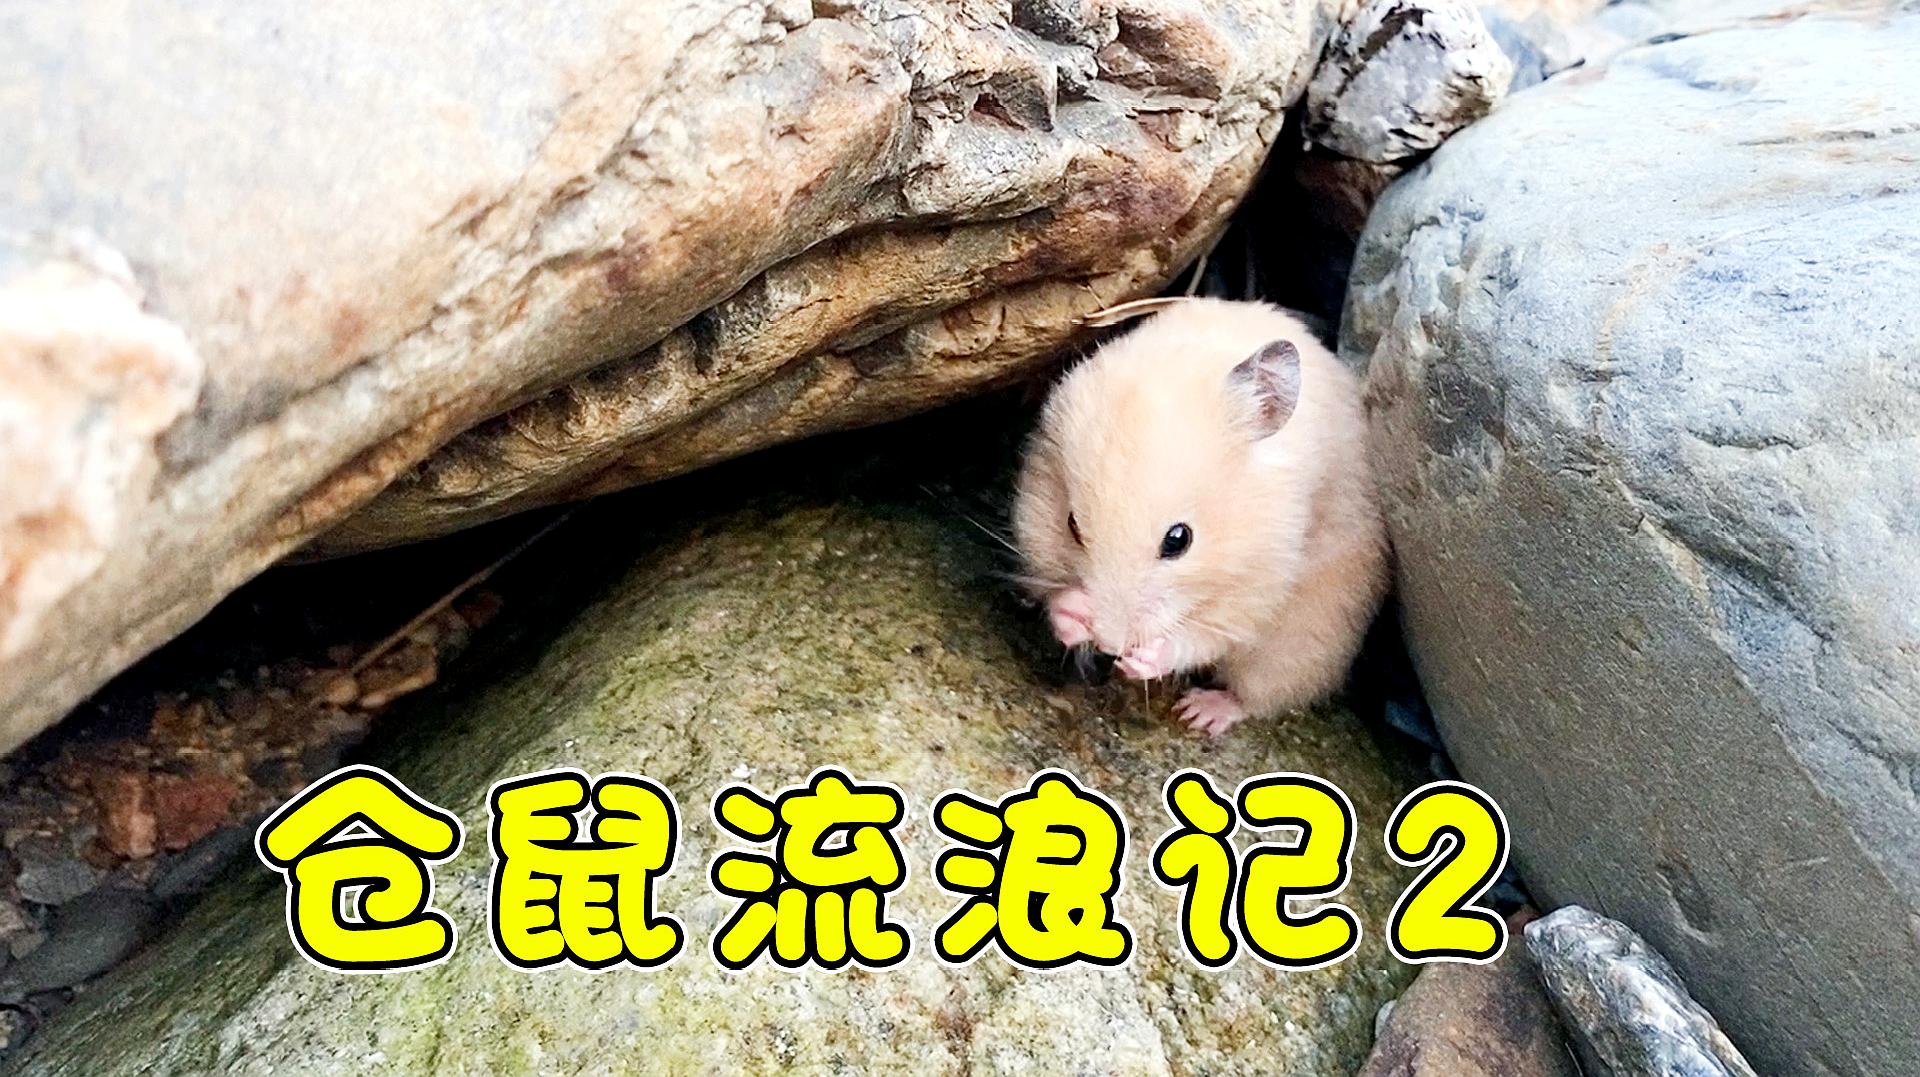 124只小仓鼠已经长大了,其中有11只是母仓鼠,13只是公仓鼠  01:05